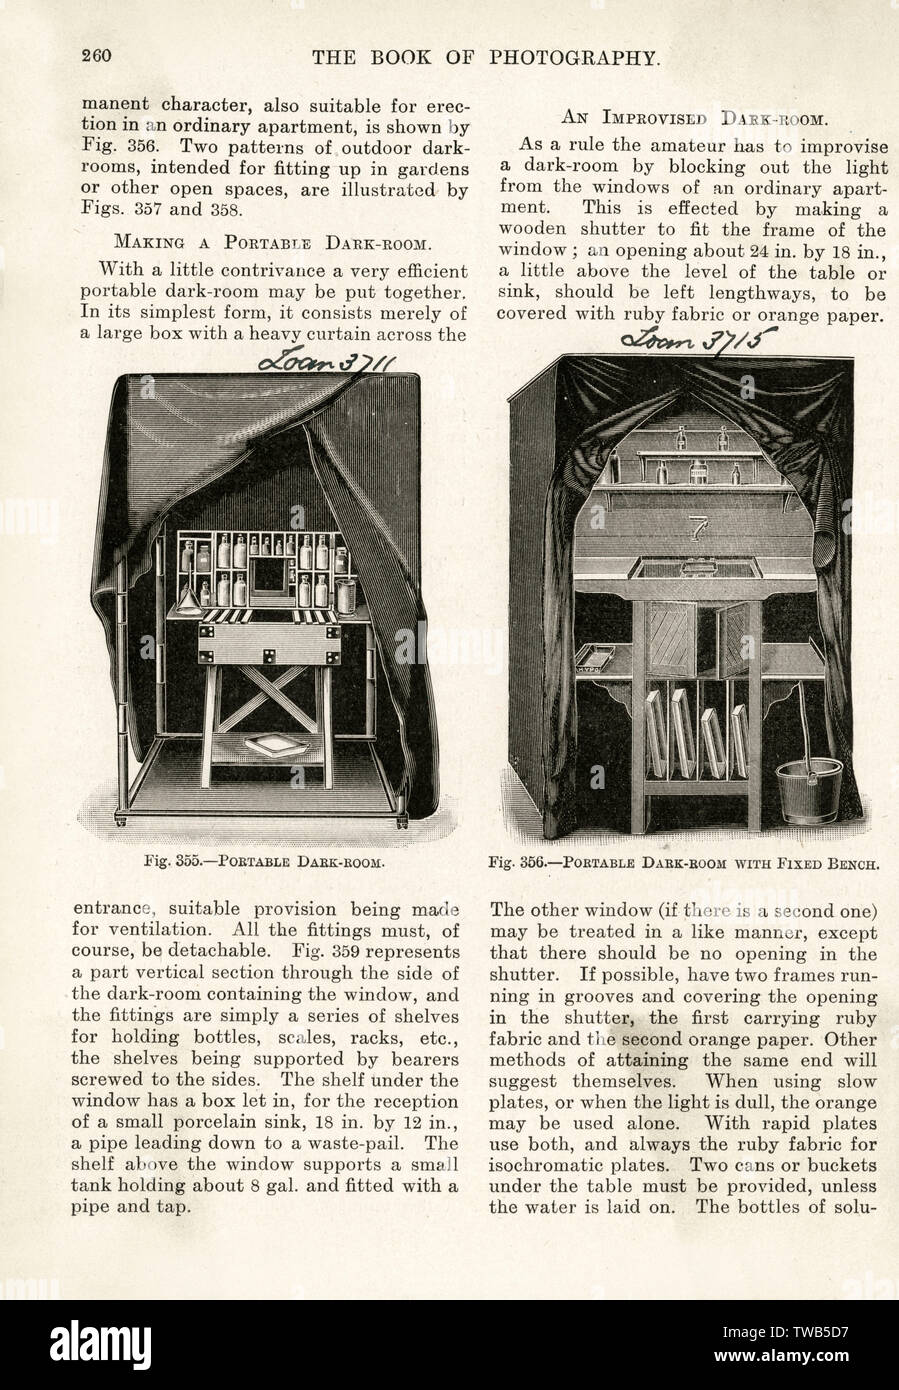 Istruzioni scritte per la creazione di una camera oscura portatile per sviluppare stampe fotografiche. Data: 1905 Foto Stock